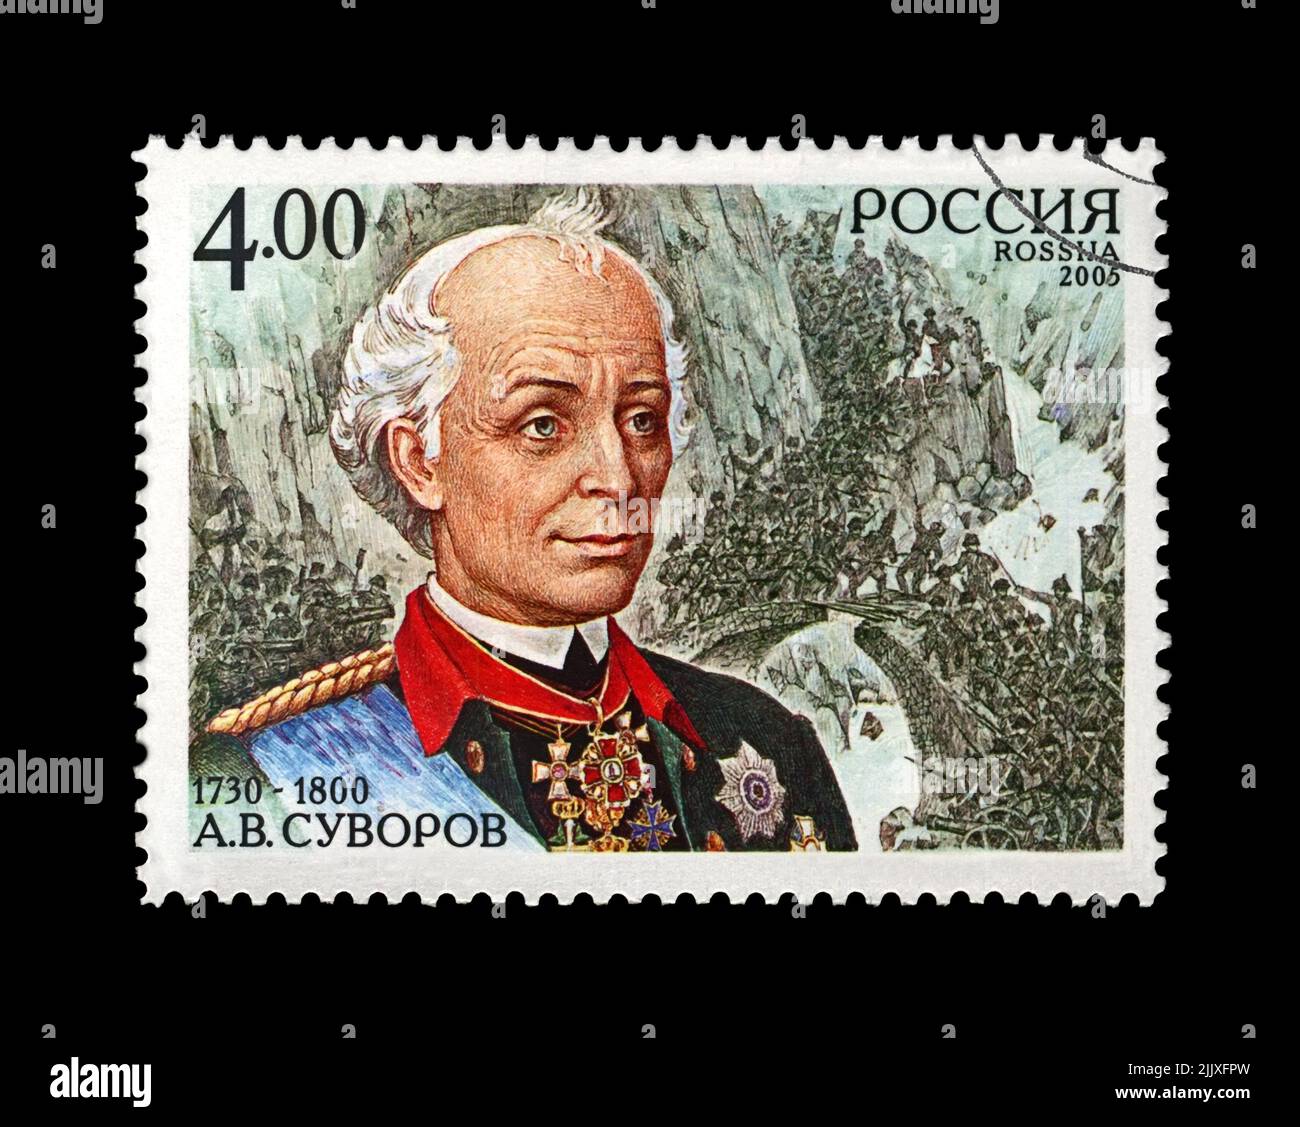 Alexander Suvorov (1730-1800), célèbre commandant de l'ordre russe, vers 2005. Timbre postal annulé imprimé en Russie isolé sur fond noir. Banque D'Images